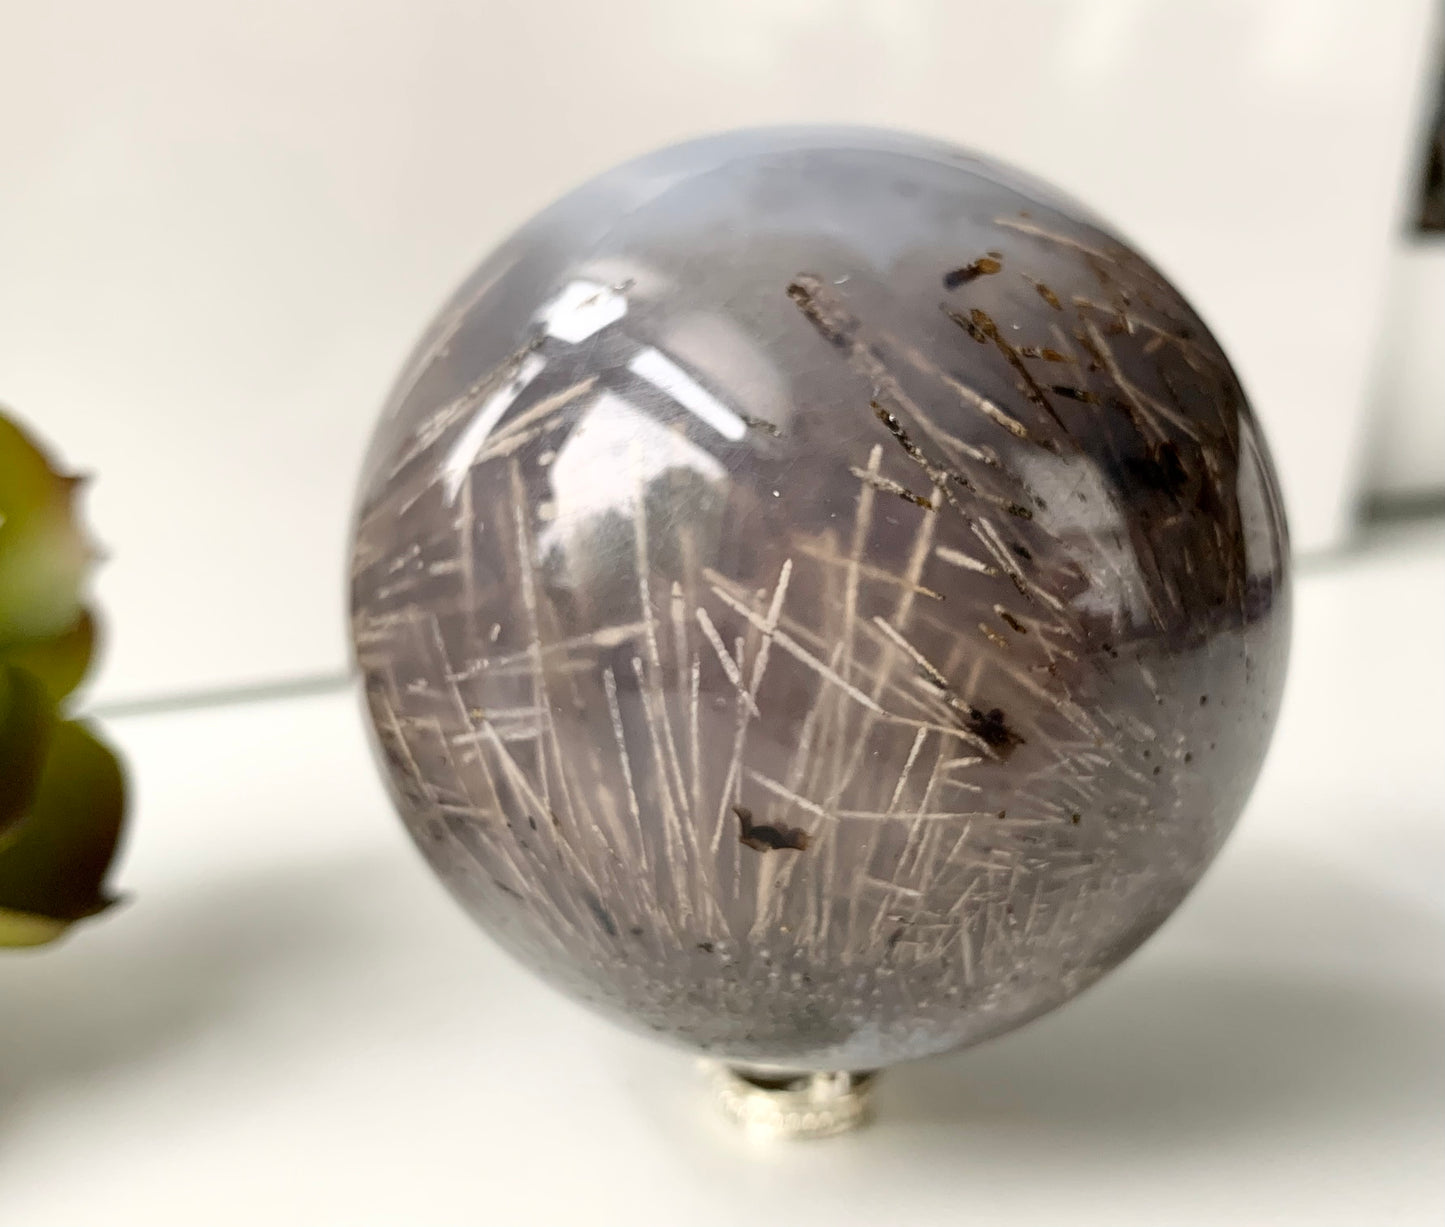 Sagenite Agate Sphere, 60mm